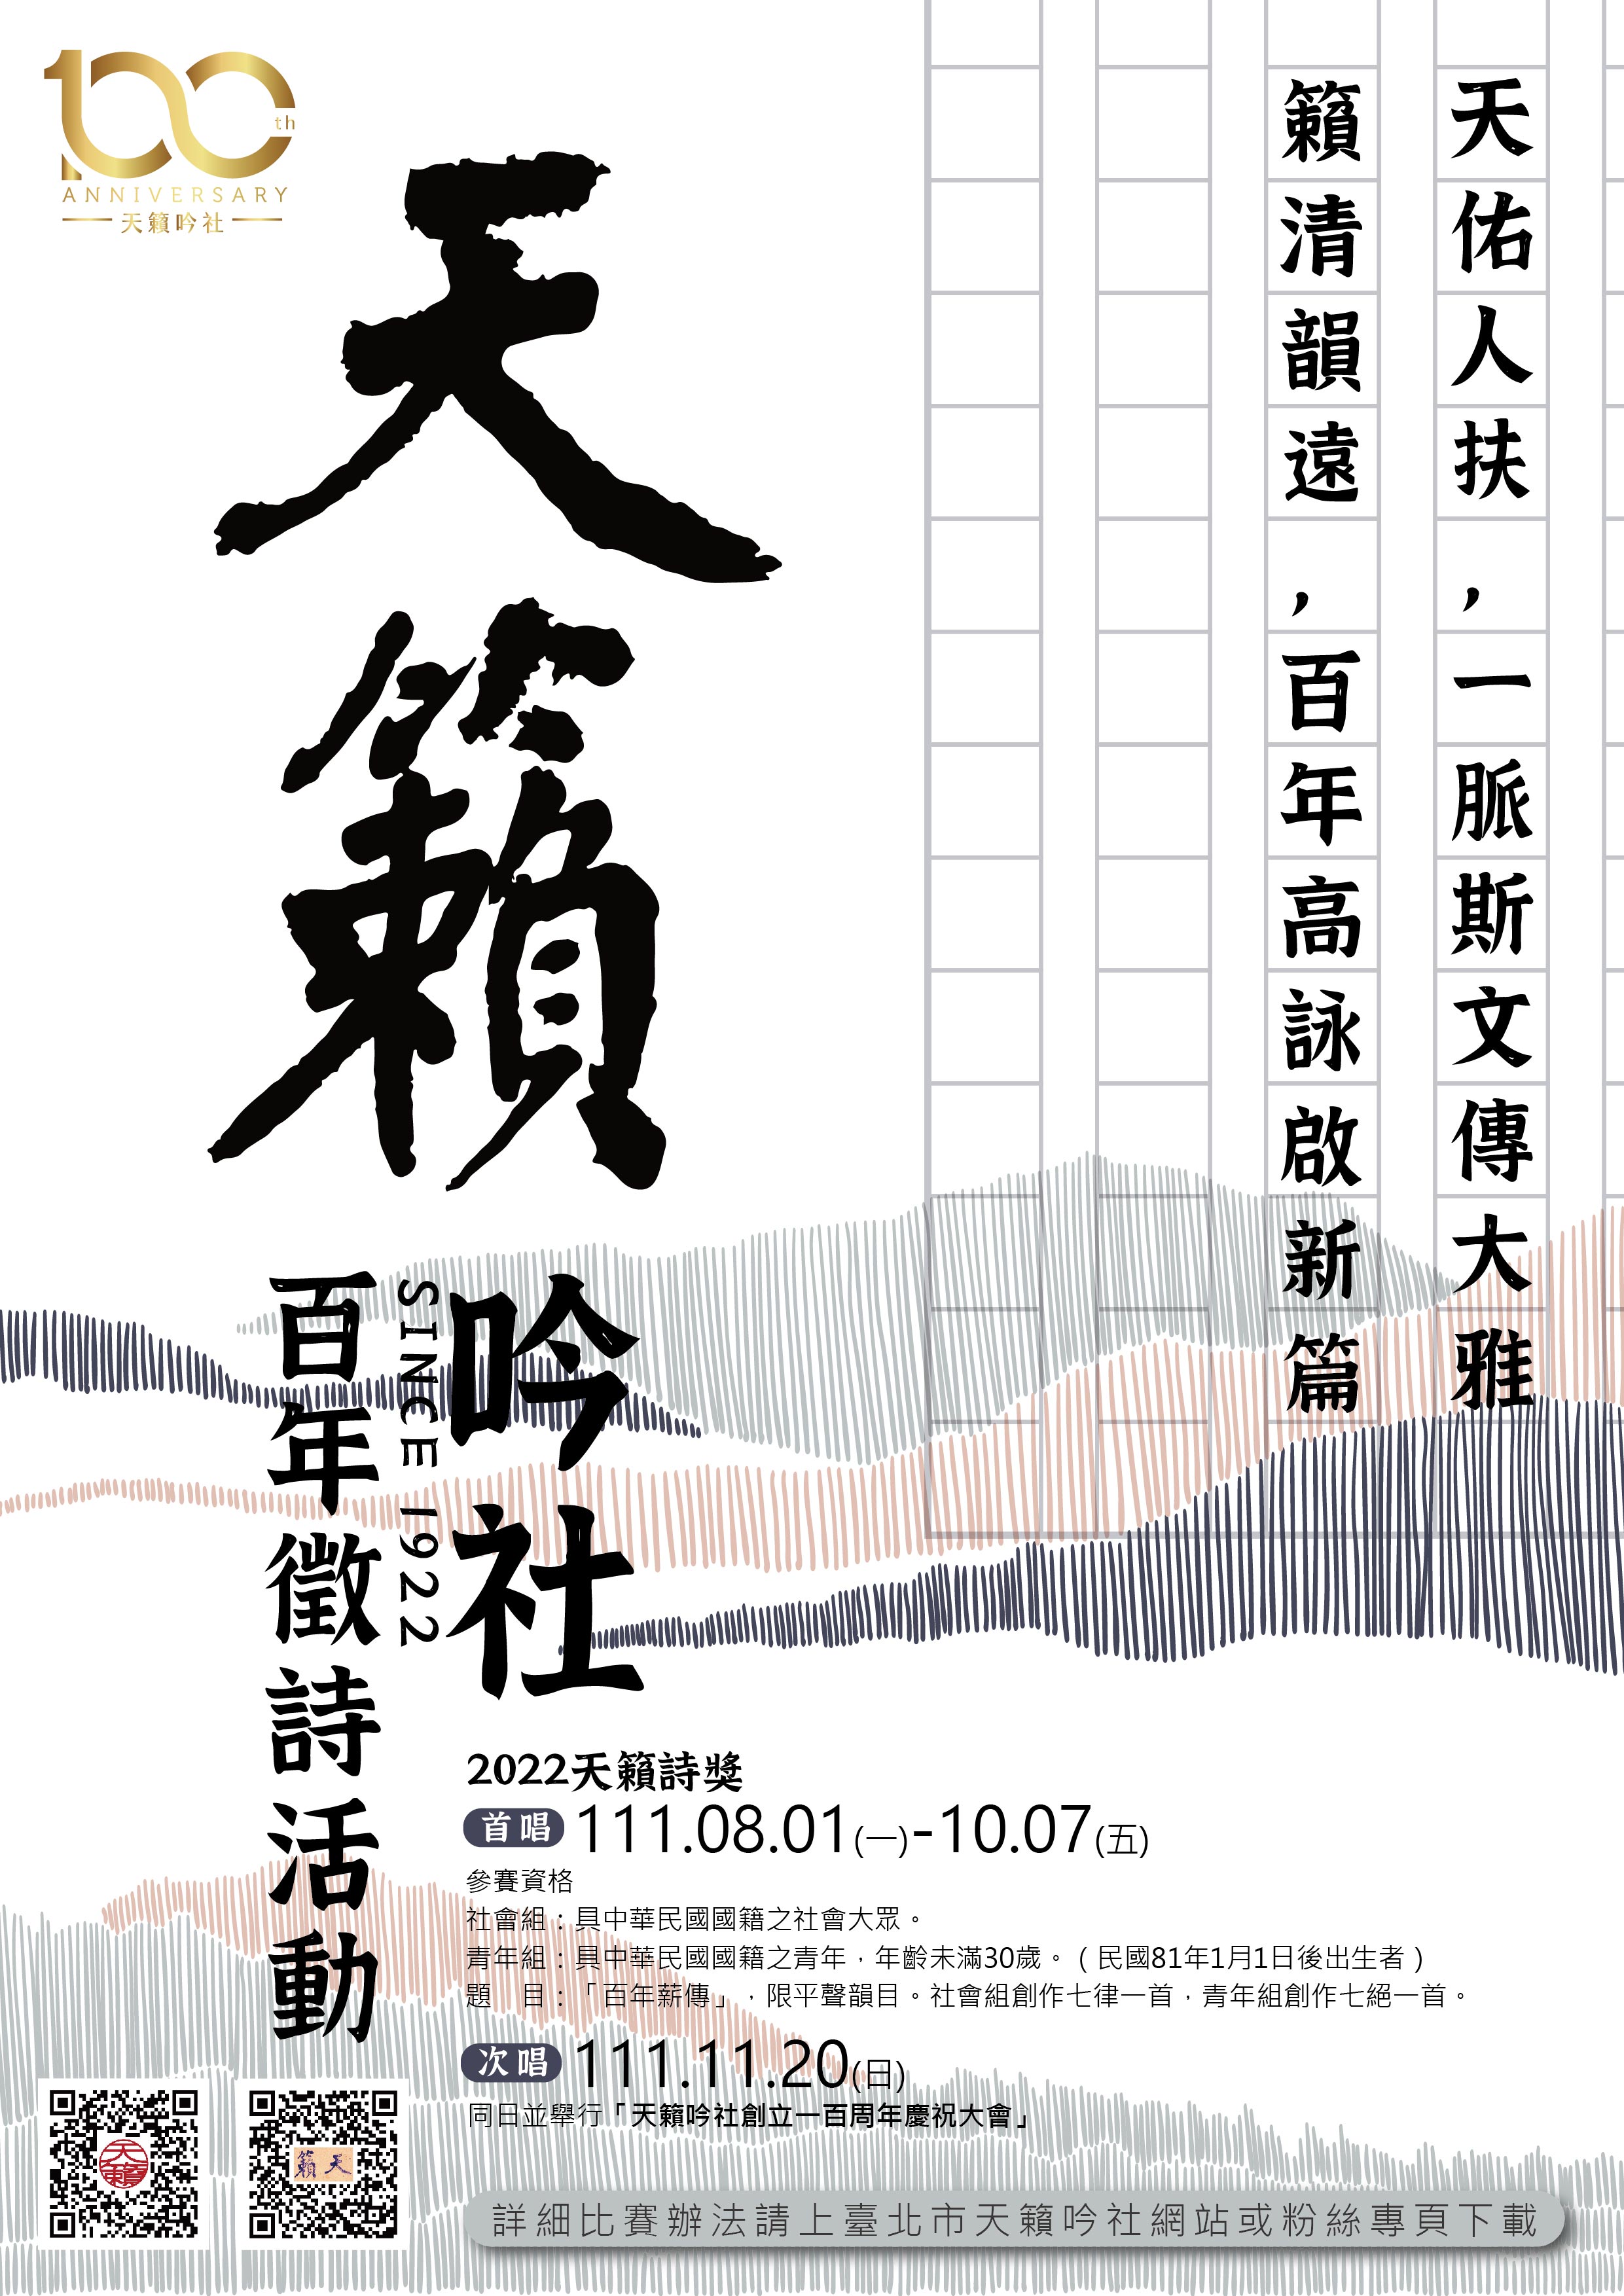 220701-天籁吟社-征诗海报_工作区域 1